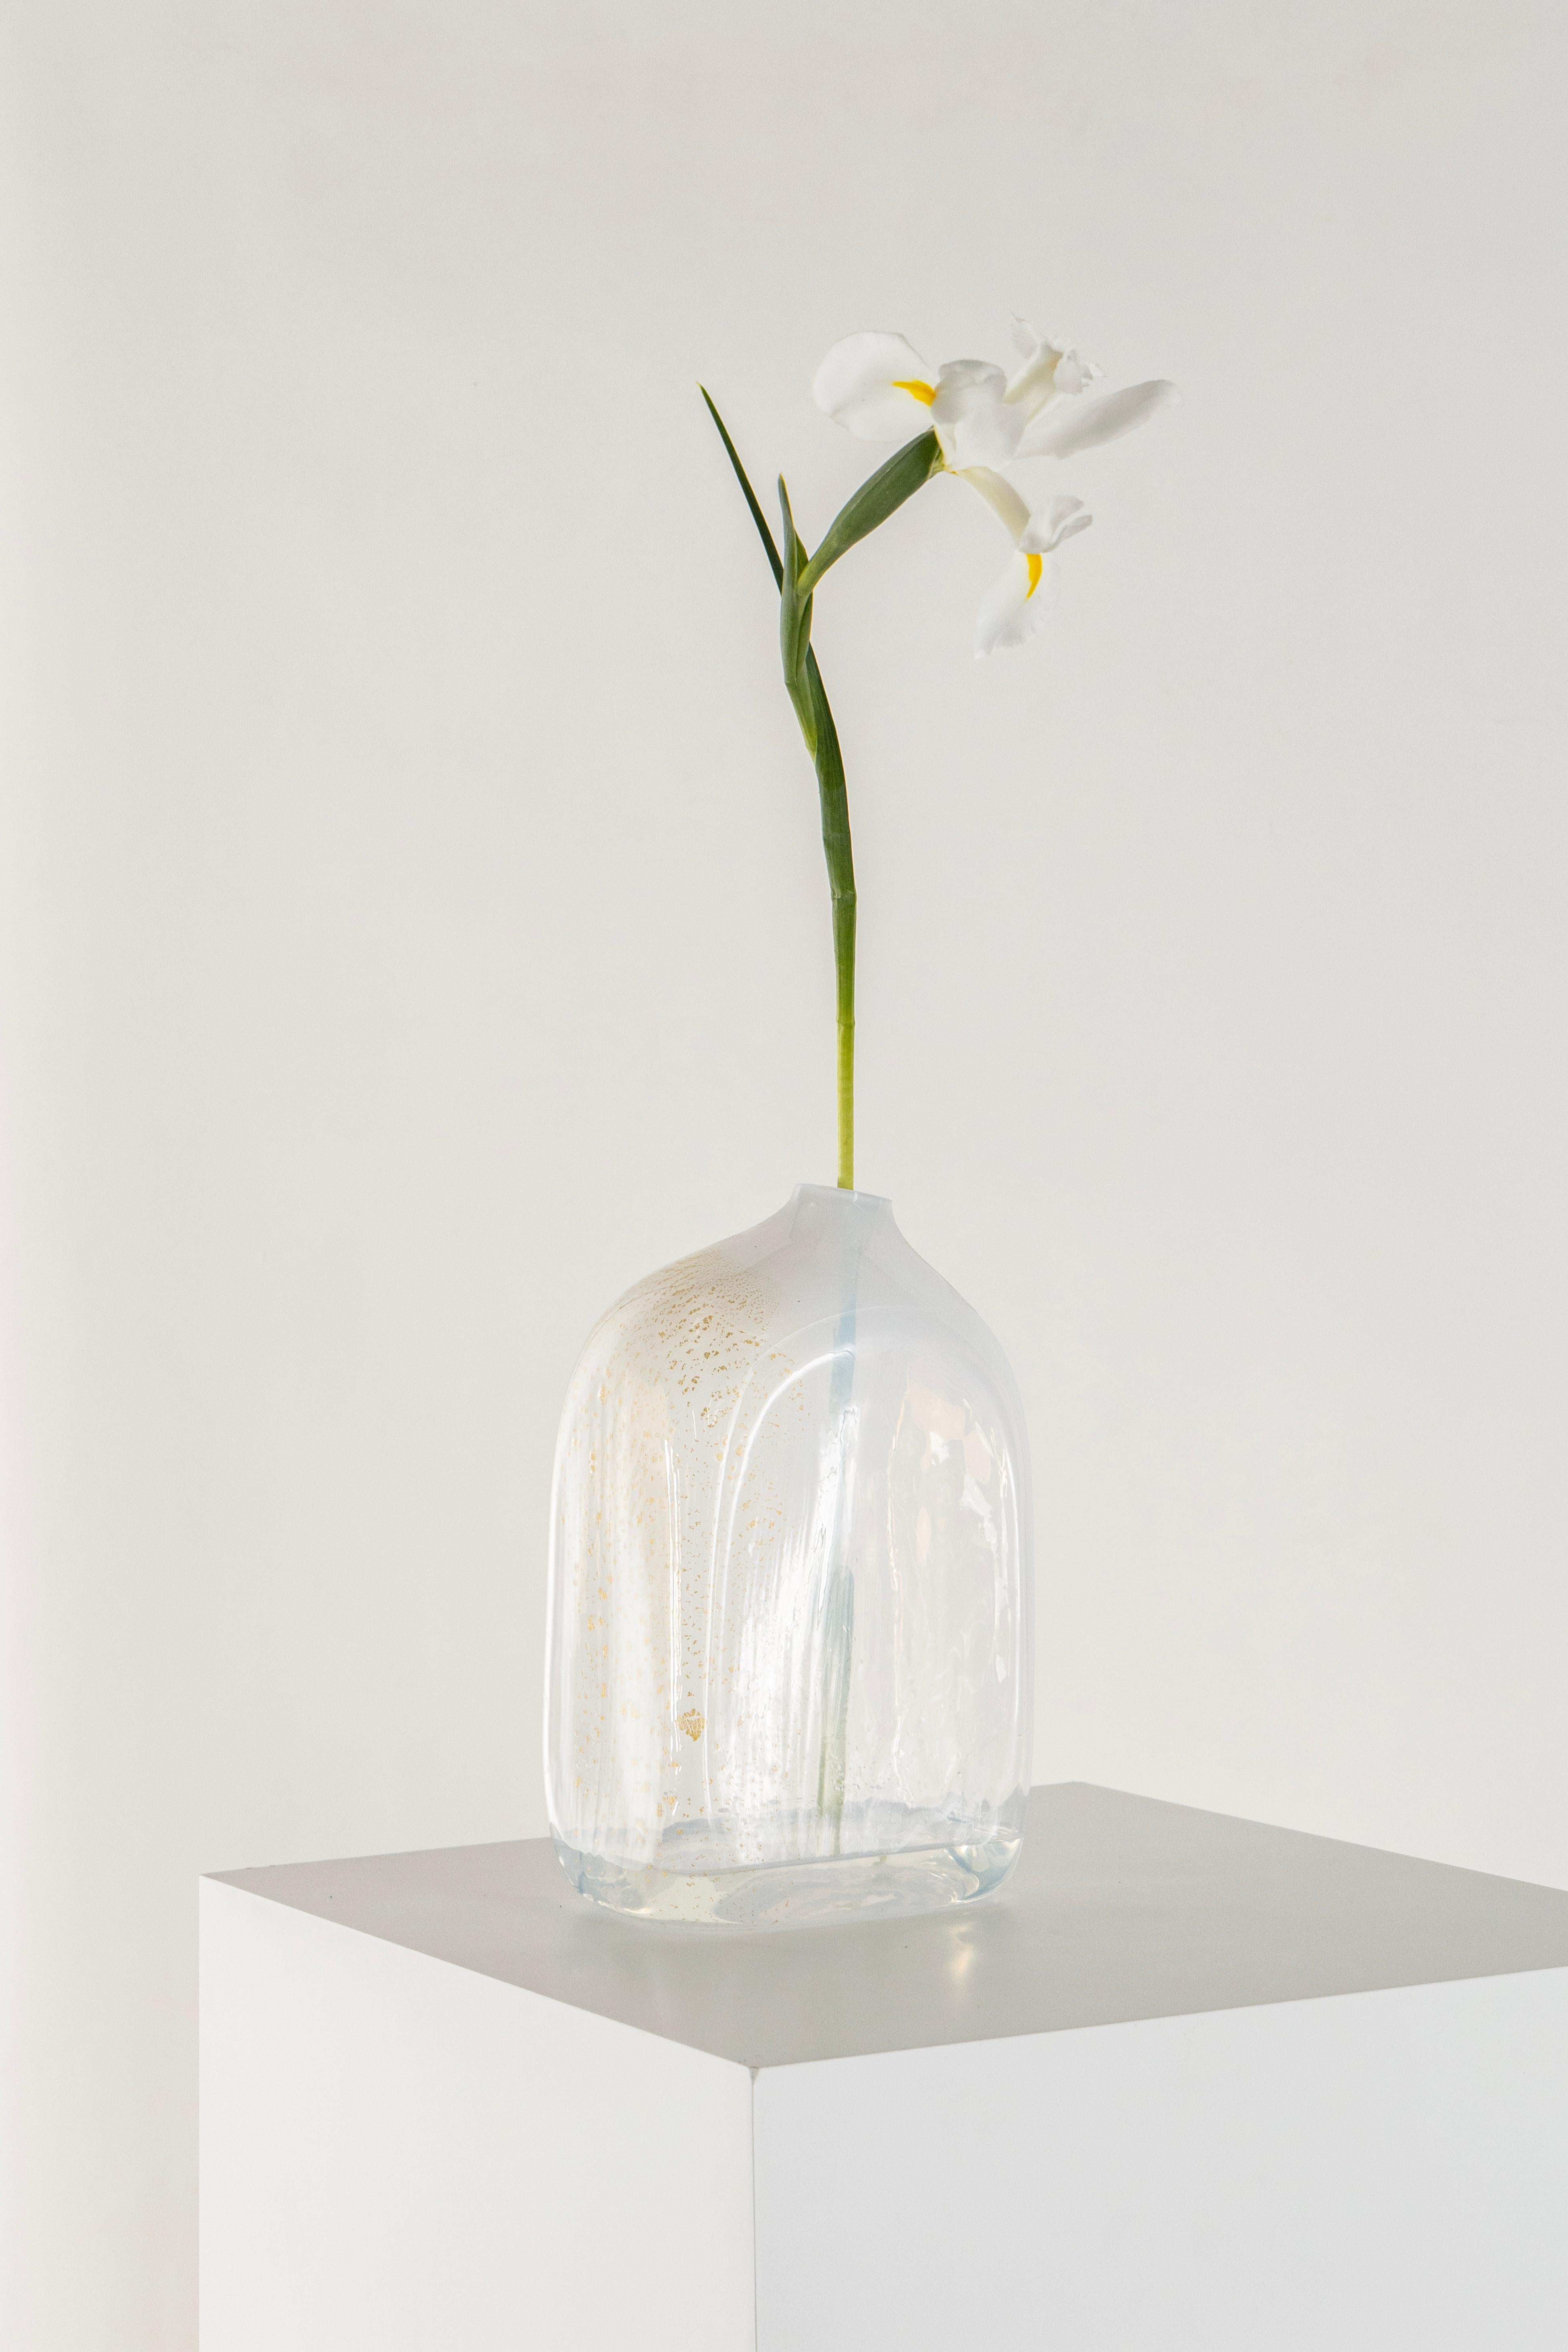 Diese Vasen in limitierter Auflage sind Teil der Aurum-Kollektion: prächtig, rätselhaft und sinnlich.

Durch sorgfältiges Experimentieren mit der traditionellen Glasbläsertechnik wurden die Vasen mit sehr feinen Blättern aus 23-karätigem Gold